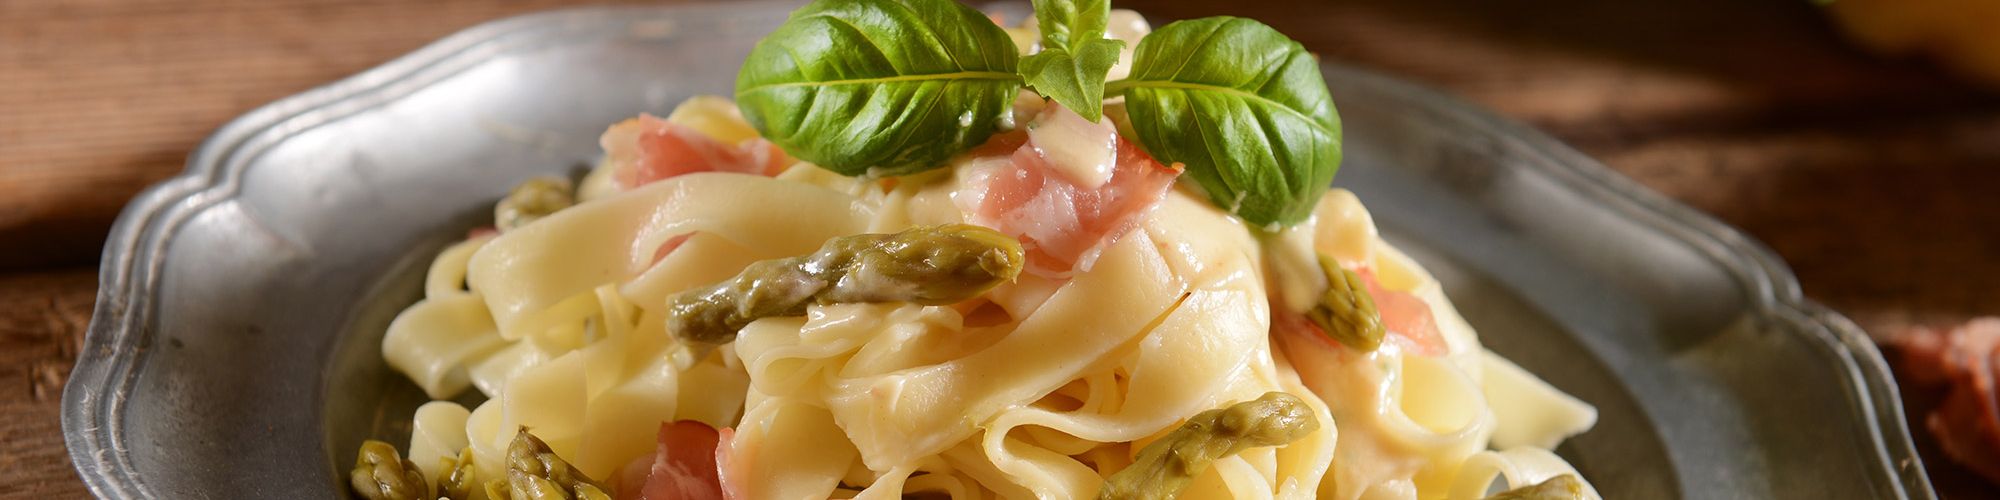 ricetta Tagliatelle agli asparagi e prosciutto crudo con pasta fresca